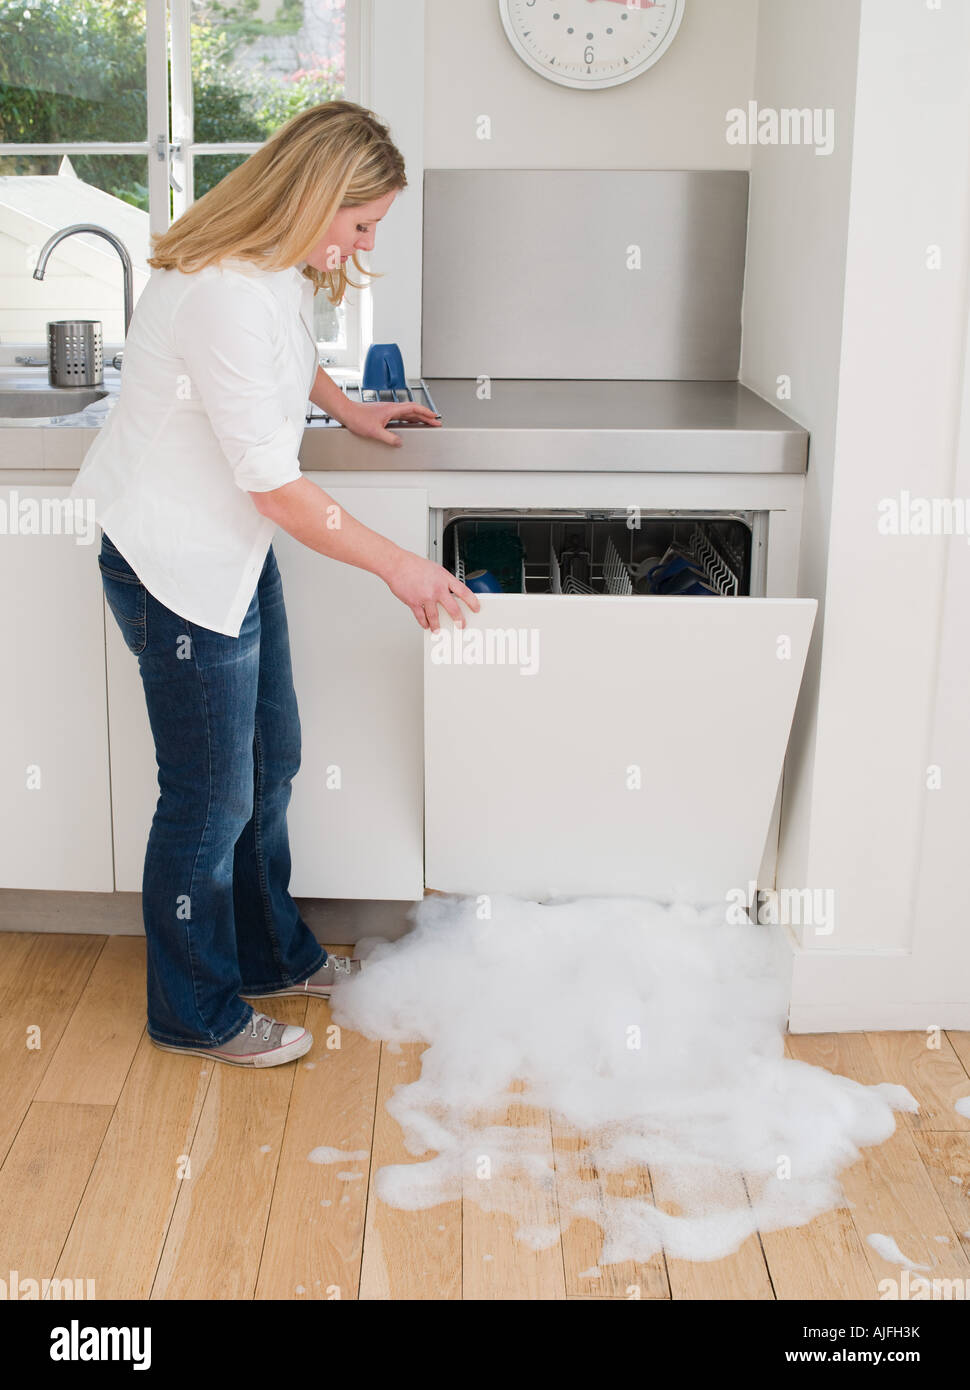 Femme de l'ouverture d'un lave-vaisselle qui fuit Photo Stock - Alamy